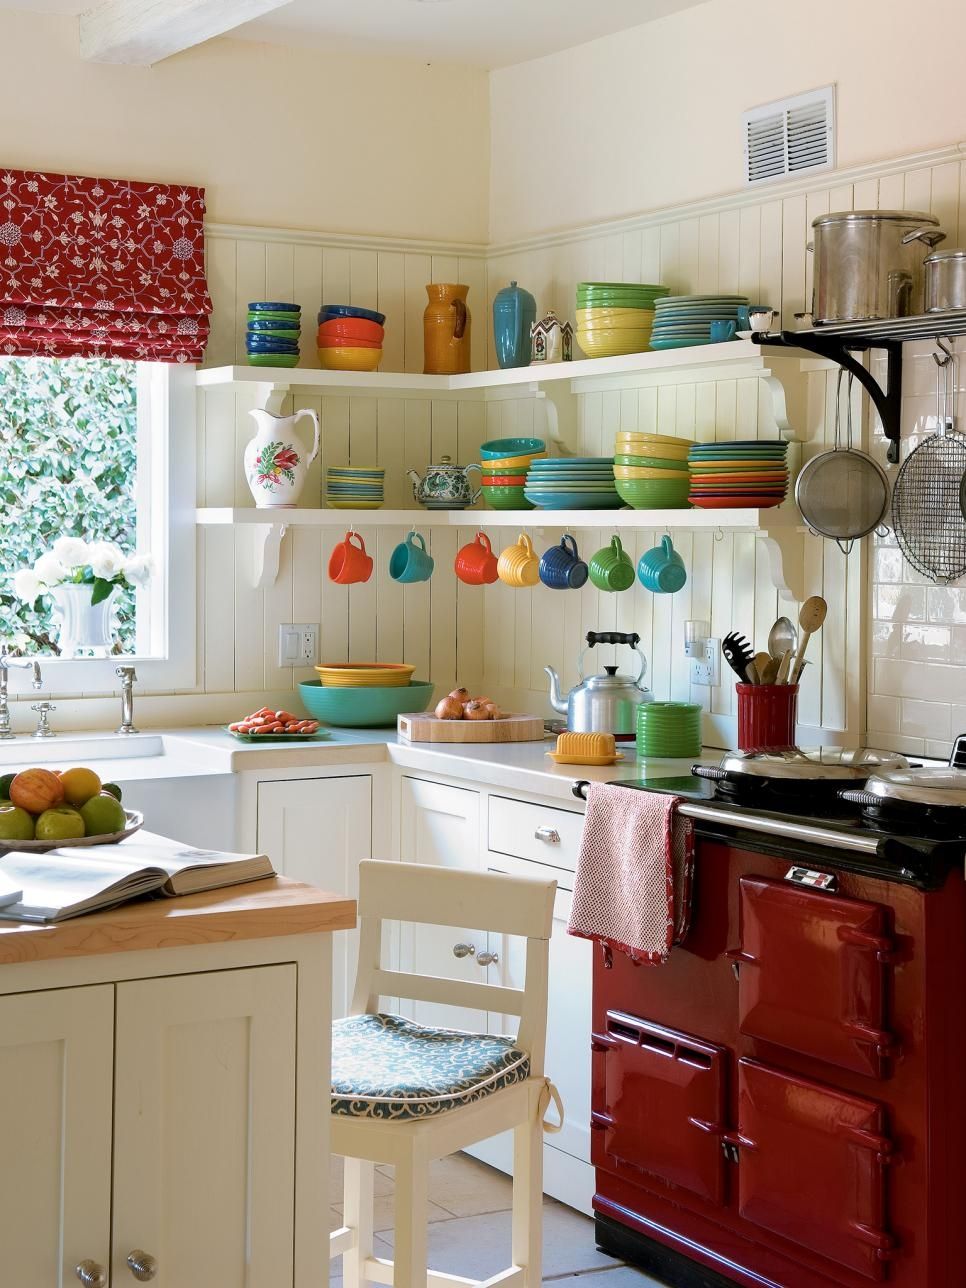 Interiér bílé kuchyně s harmonickou kombinací barev